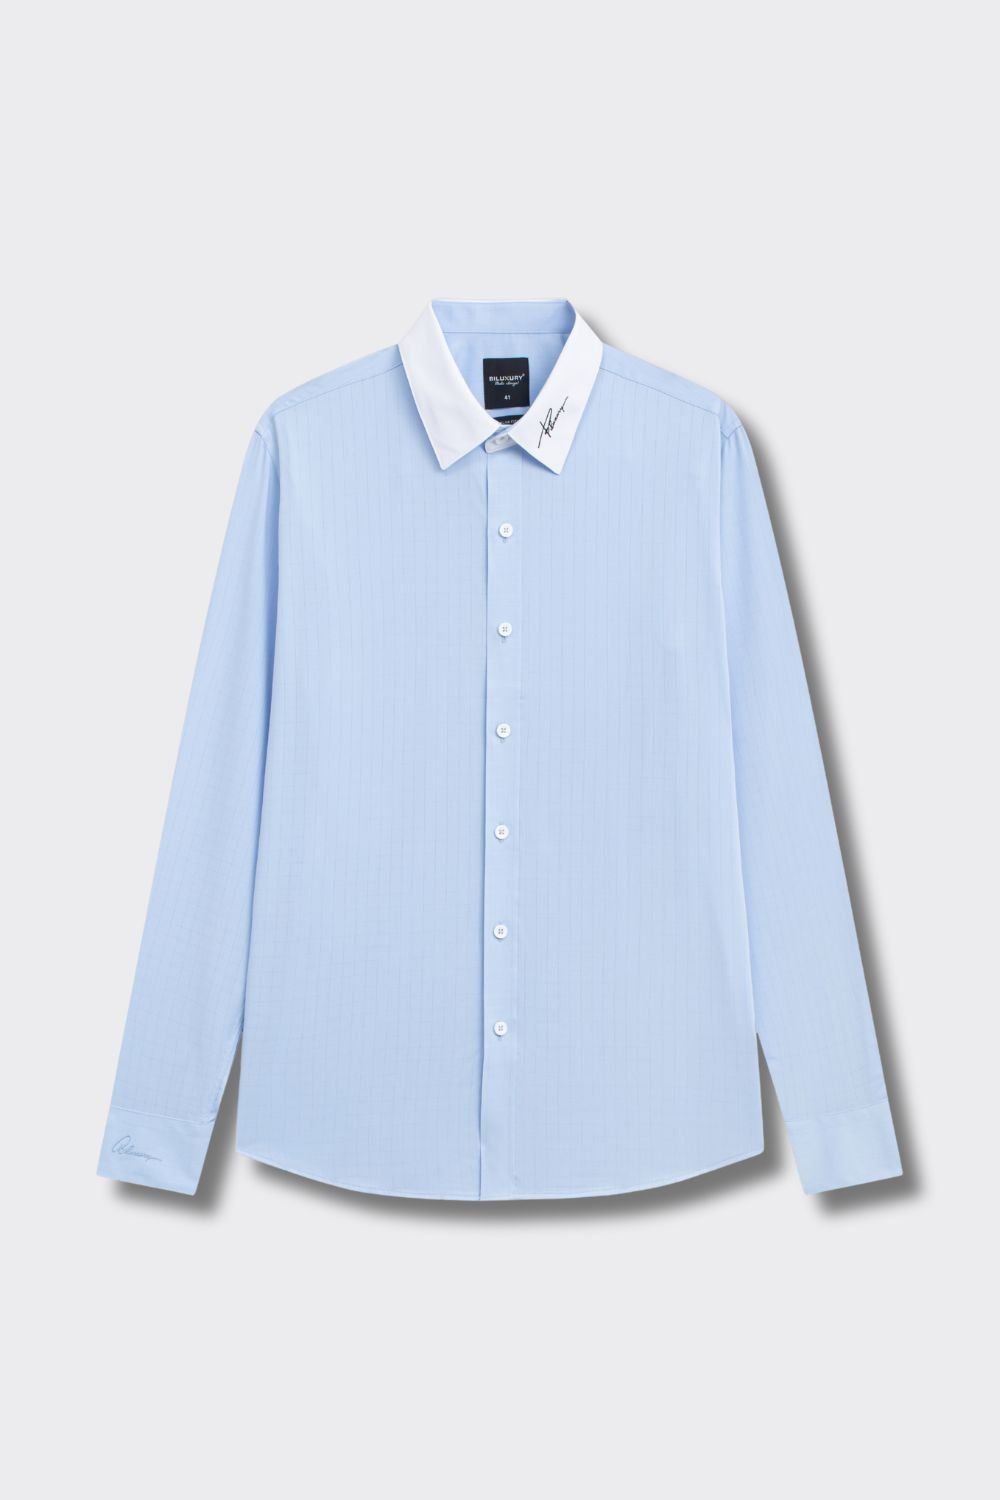 Blue Checkered Modal Fiber Shirt